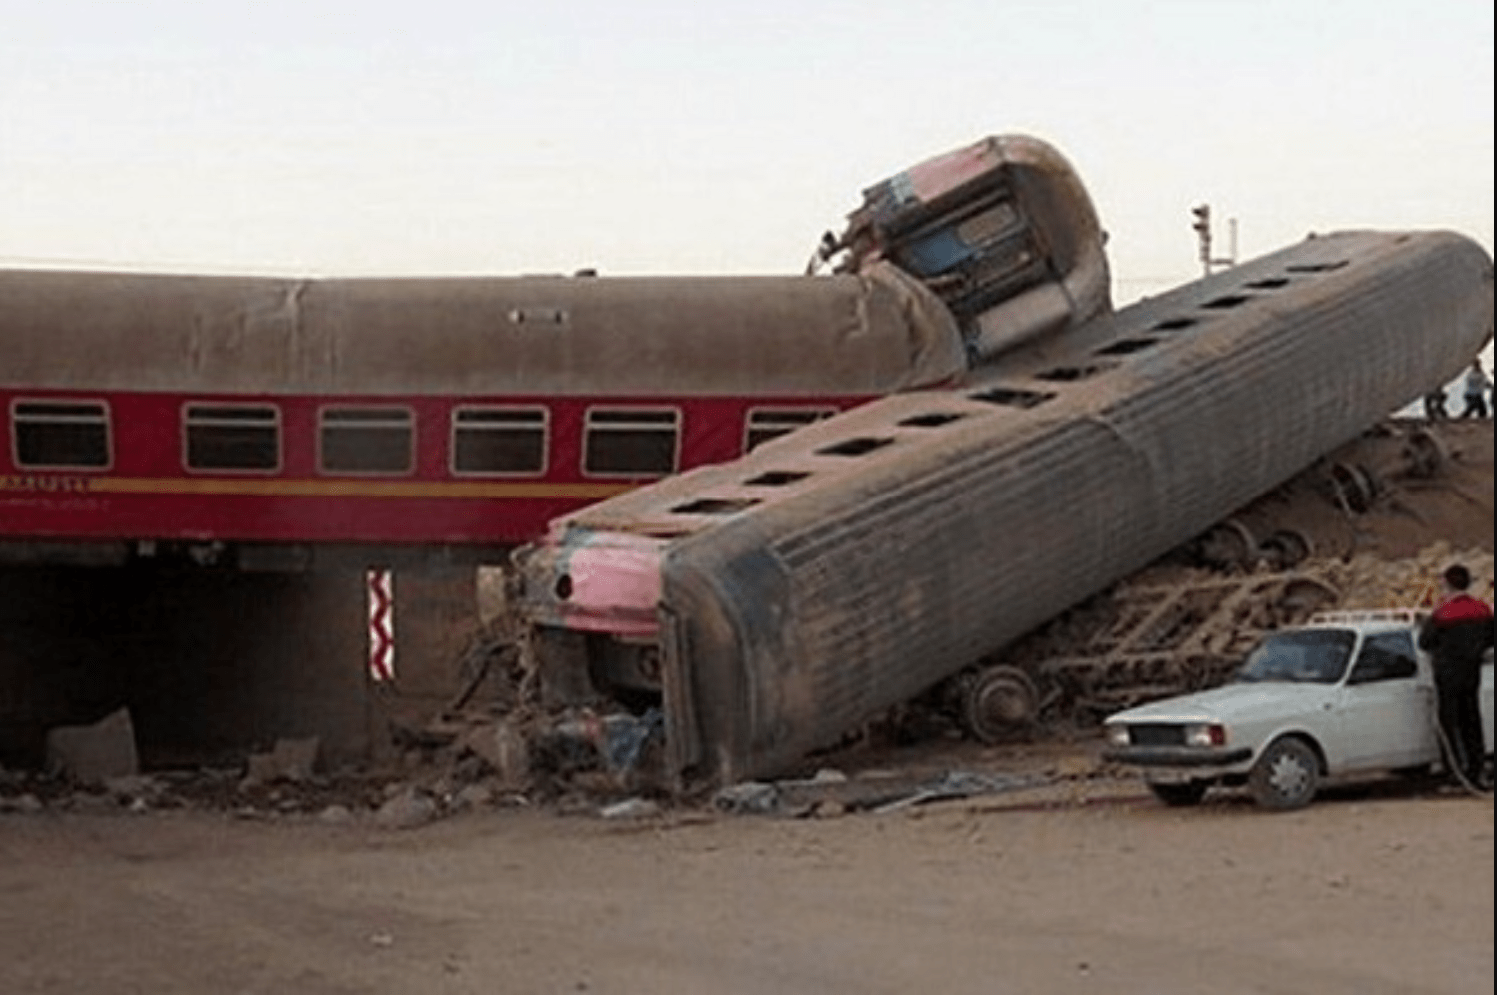 علت سانحه خروج قطار مسافربری مشهد یزد از ریل که 21 کشته بر جای گذاشت تصادف با بیل مکانیکی بوده است